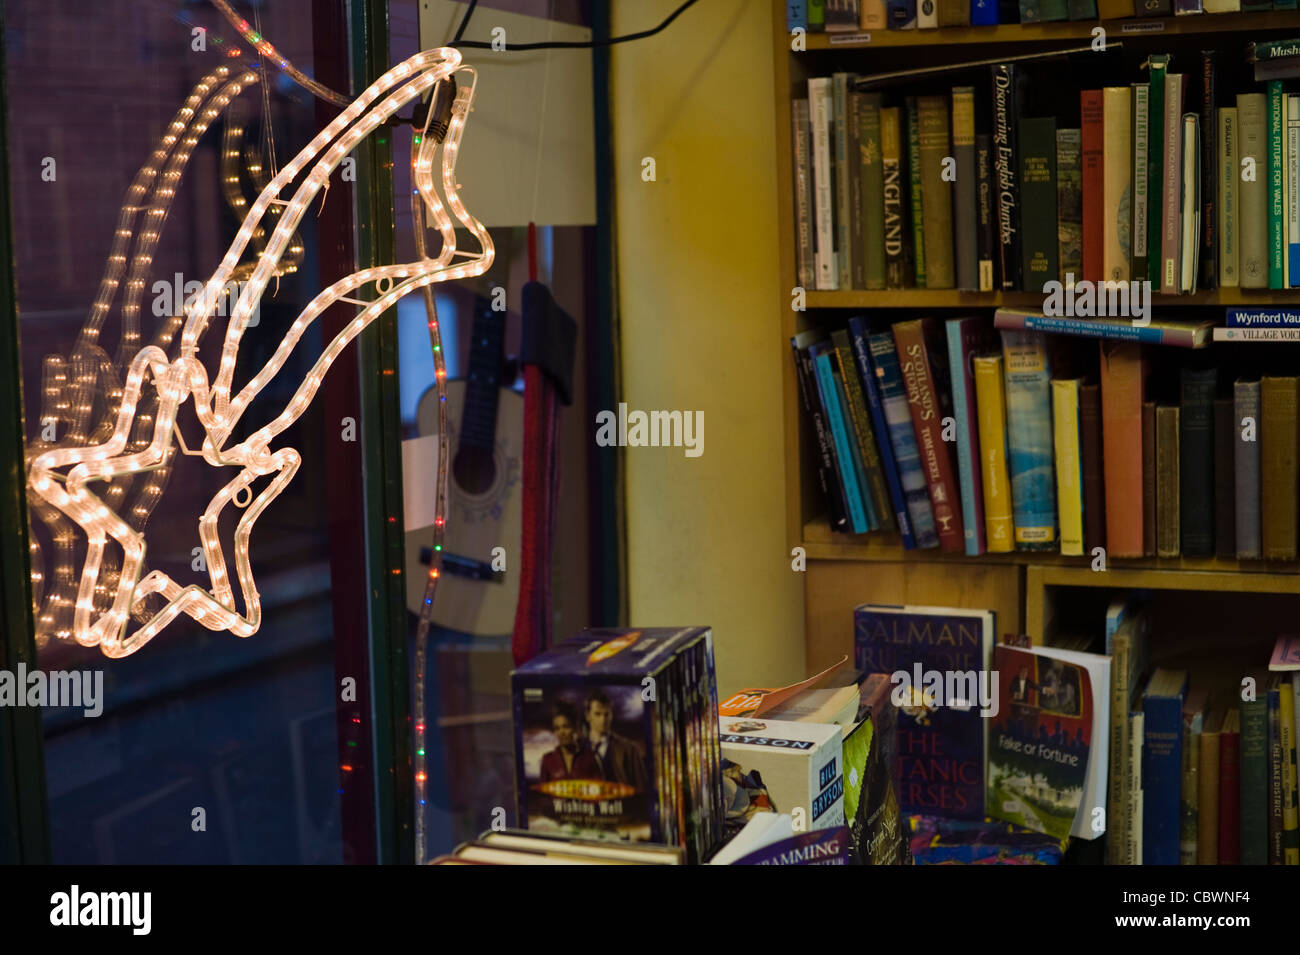 Illuminata shooting star nella finestra di visualizzazione della libreria vendita libri LP in vinile e dvd Hay-on-Wye Powys Wales UK Foto Stock